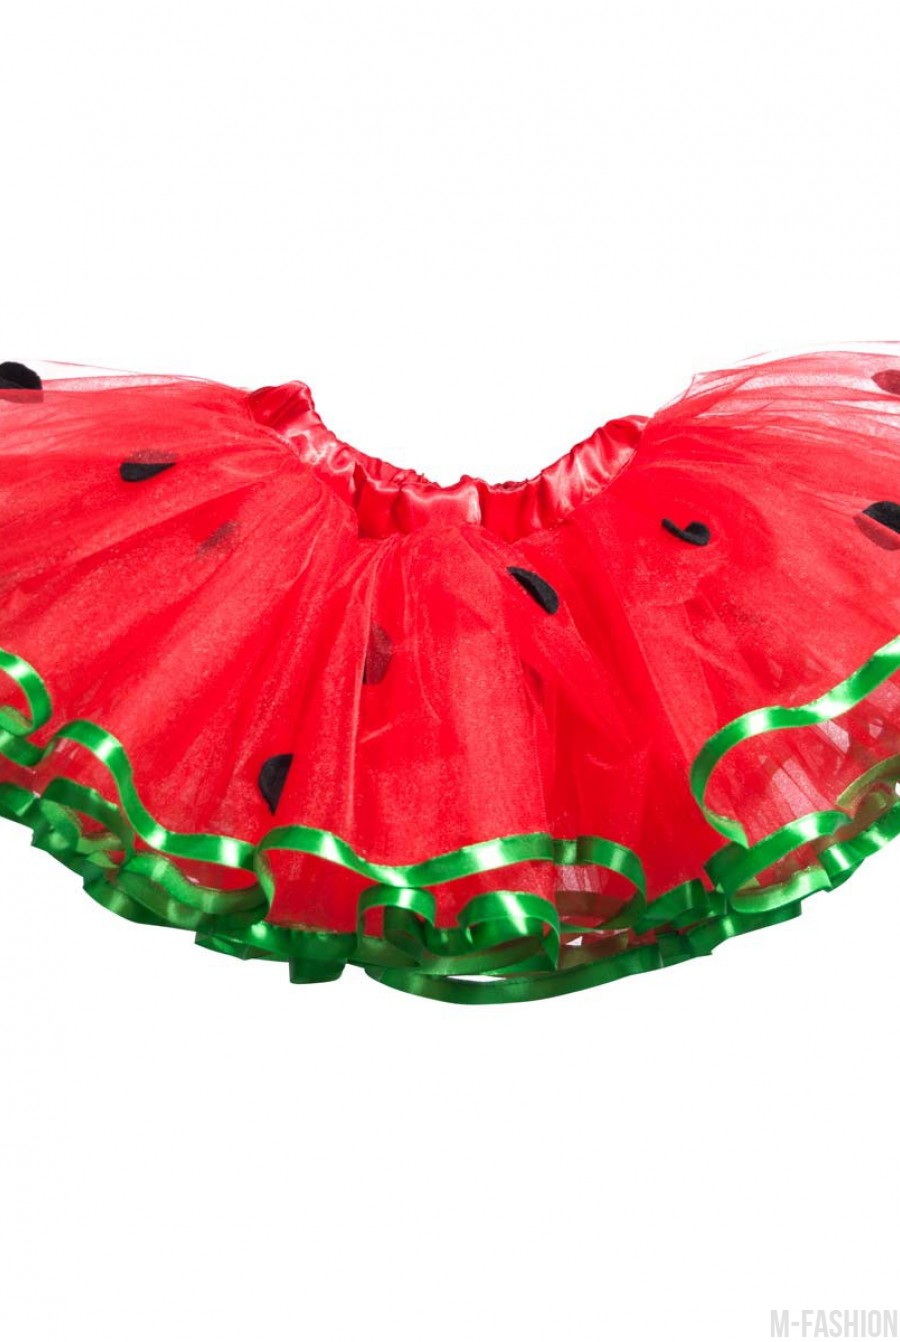 Красная пышная фатиновая юбка с декором и зеленой каймой - Фото 1